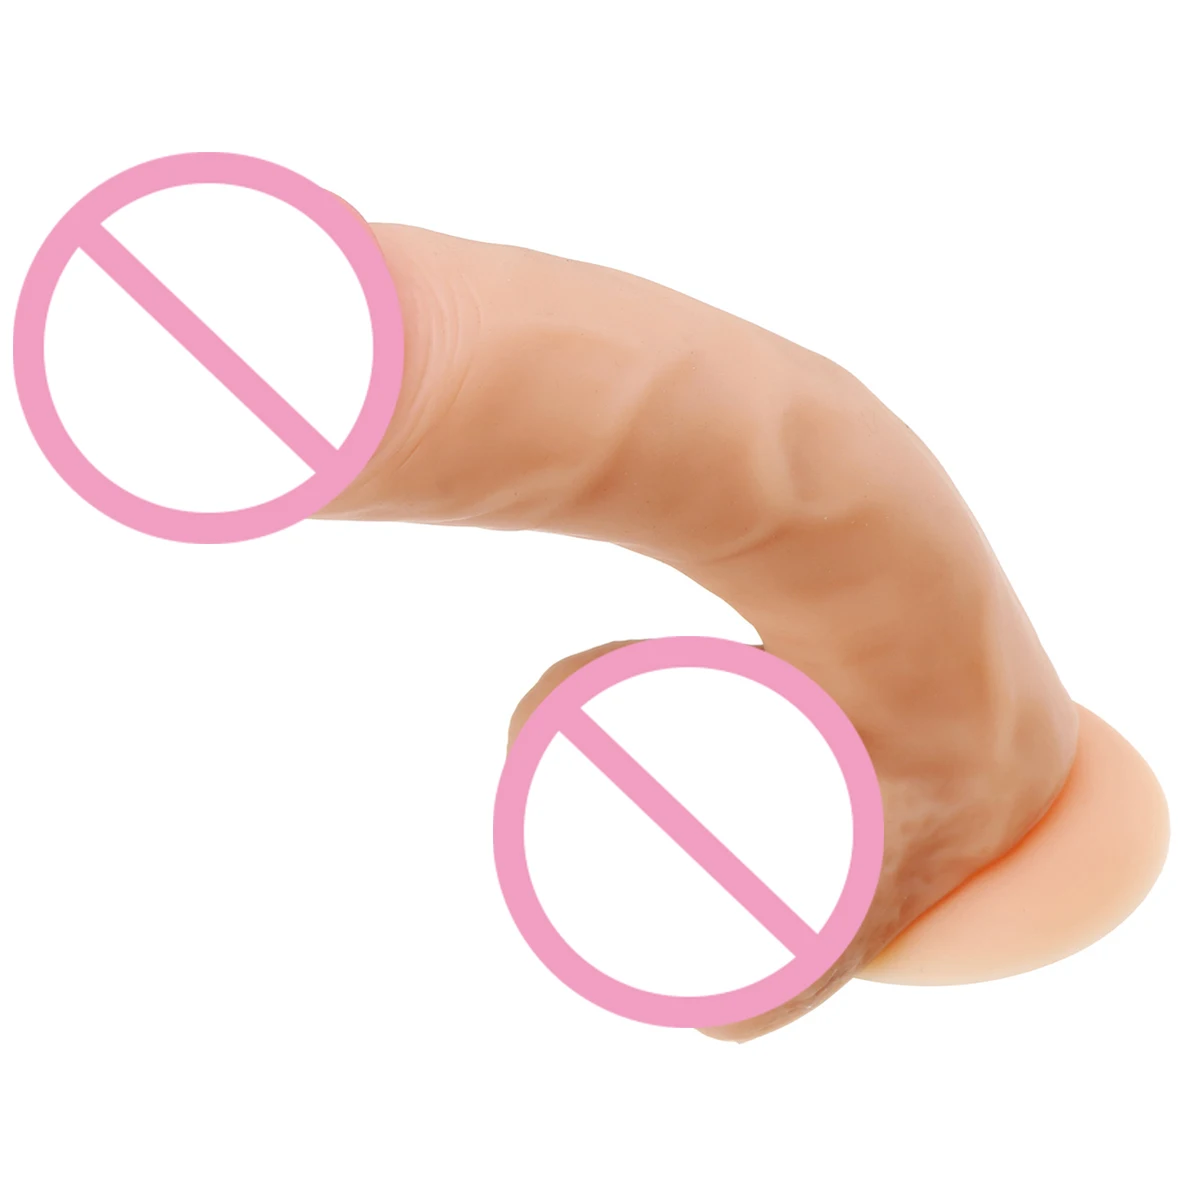 Фаллоимитатор вибратор секс-игрушки для женщин интимные товары женская мастурбация член пенис Vibarting массажер влагалища Вибраторы для